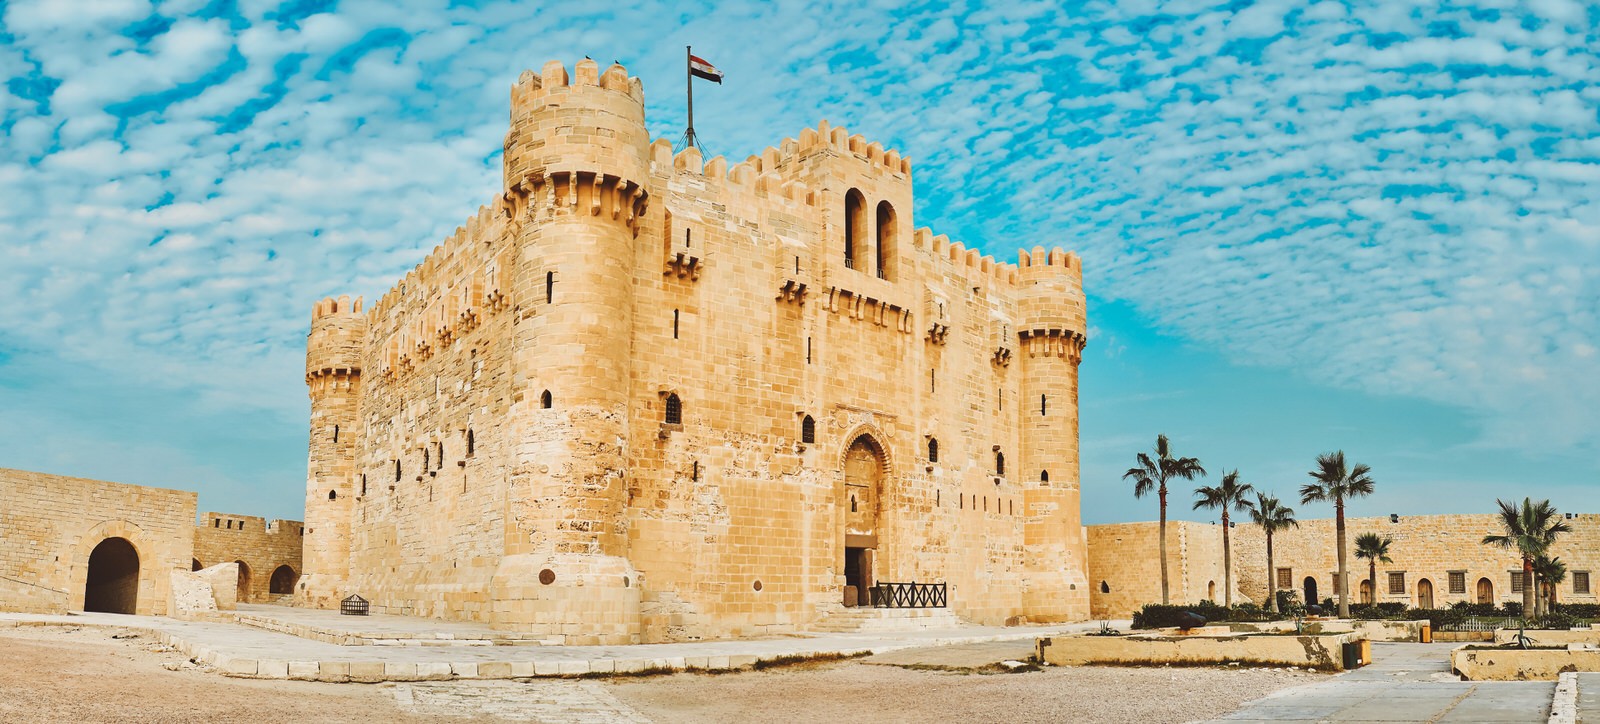 Citadel-of-Qaitbay